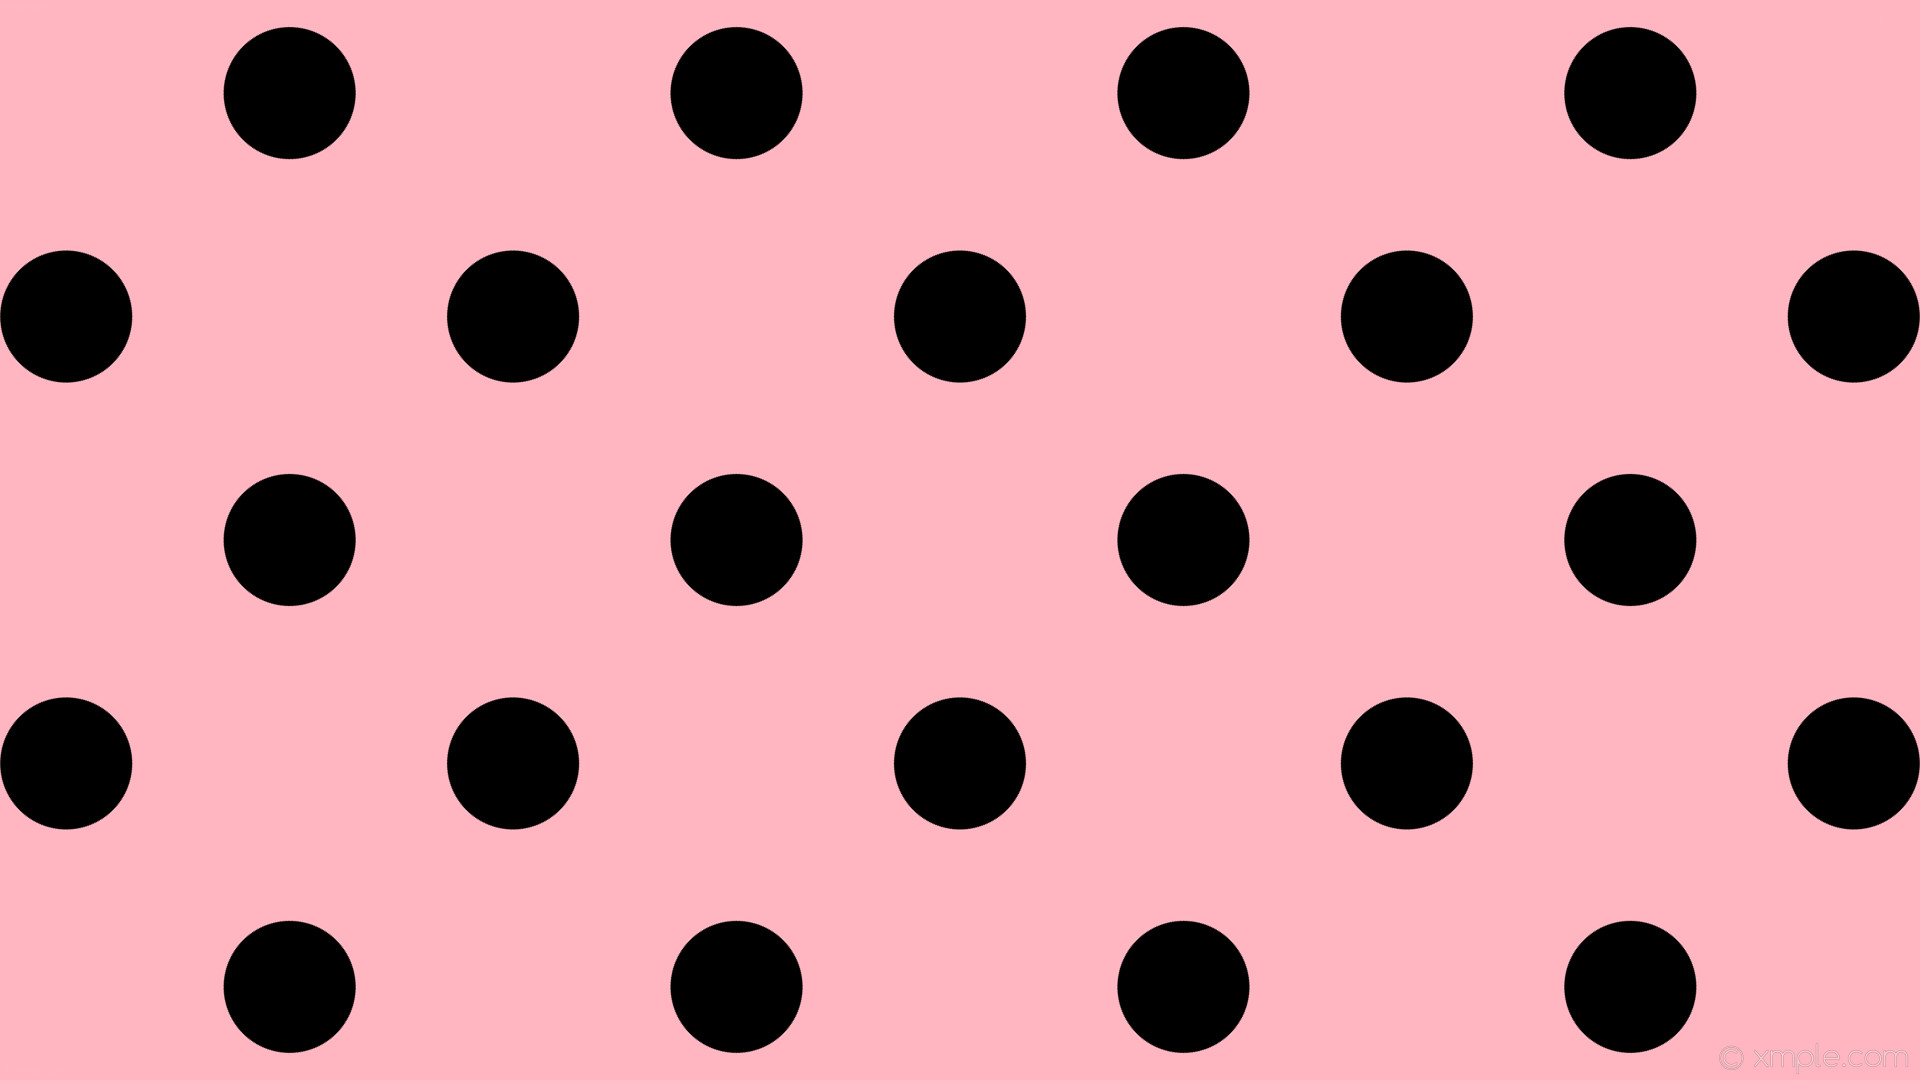 wallpaper black polka dots spots pink light pink #ffb6c1 #000000 45Â° 132px  316px